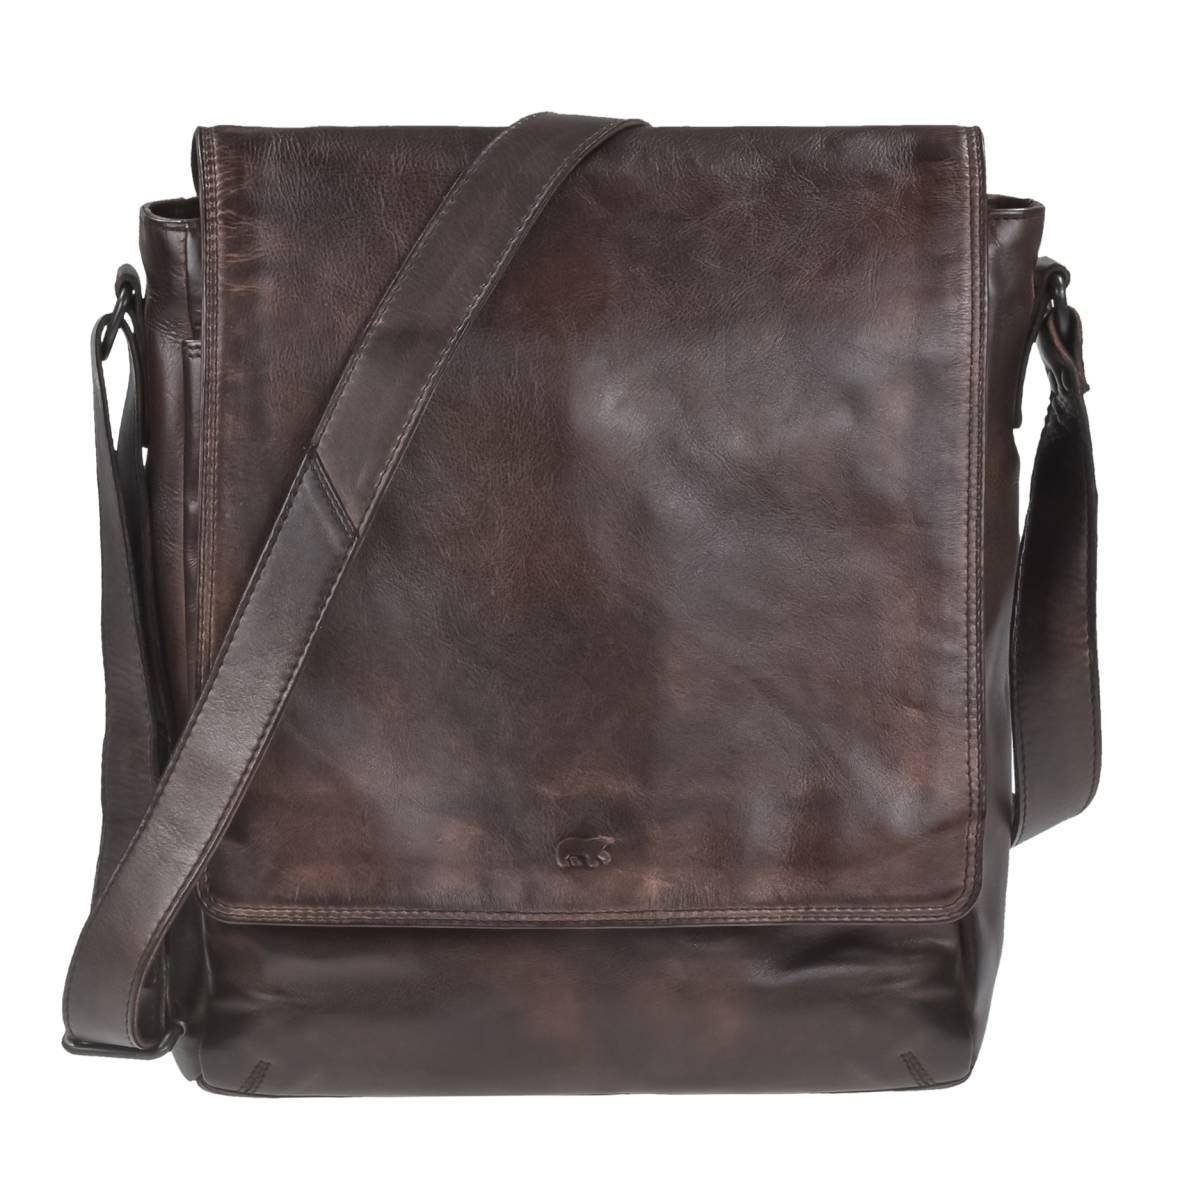 Bear Design Umhängetasche Dustin, Messenger brown Bag, Leder knautschiges 32x34cm, Schultertasche weiches